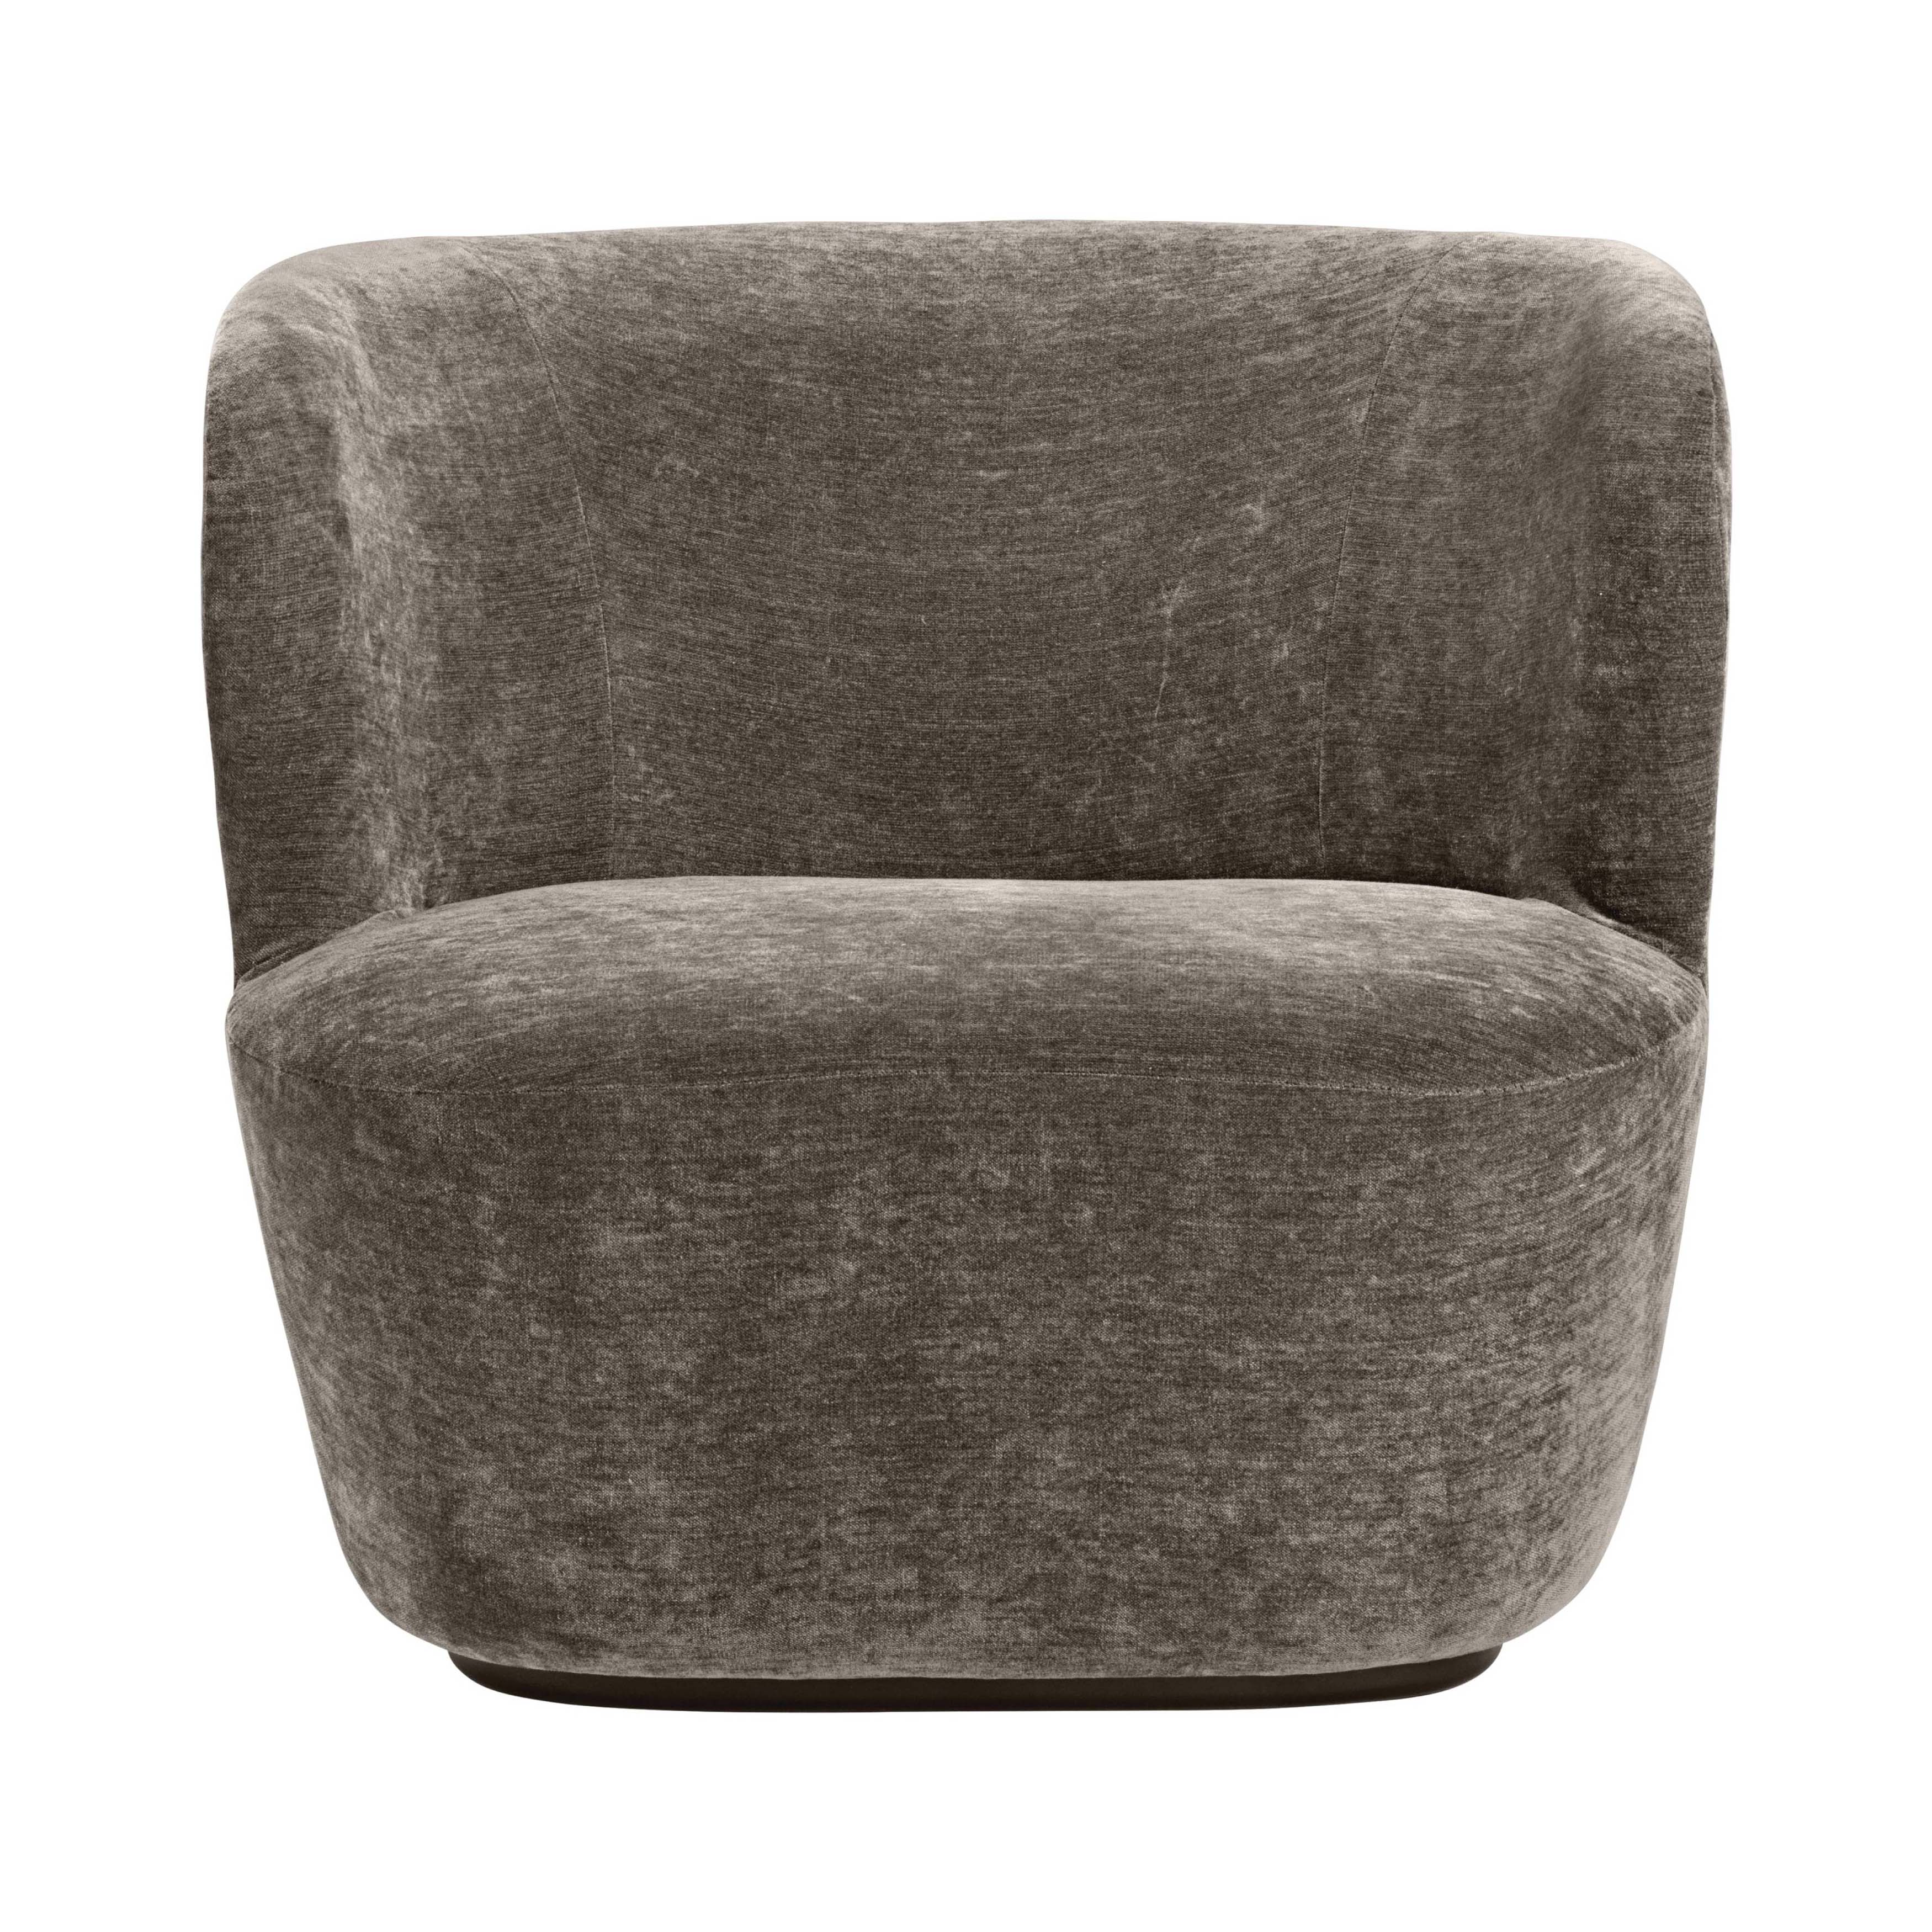 Stay Lounge Chair: Large + Black + Dedar + Belsuede